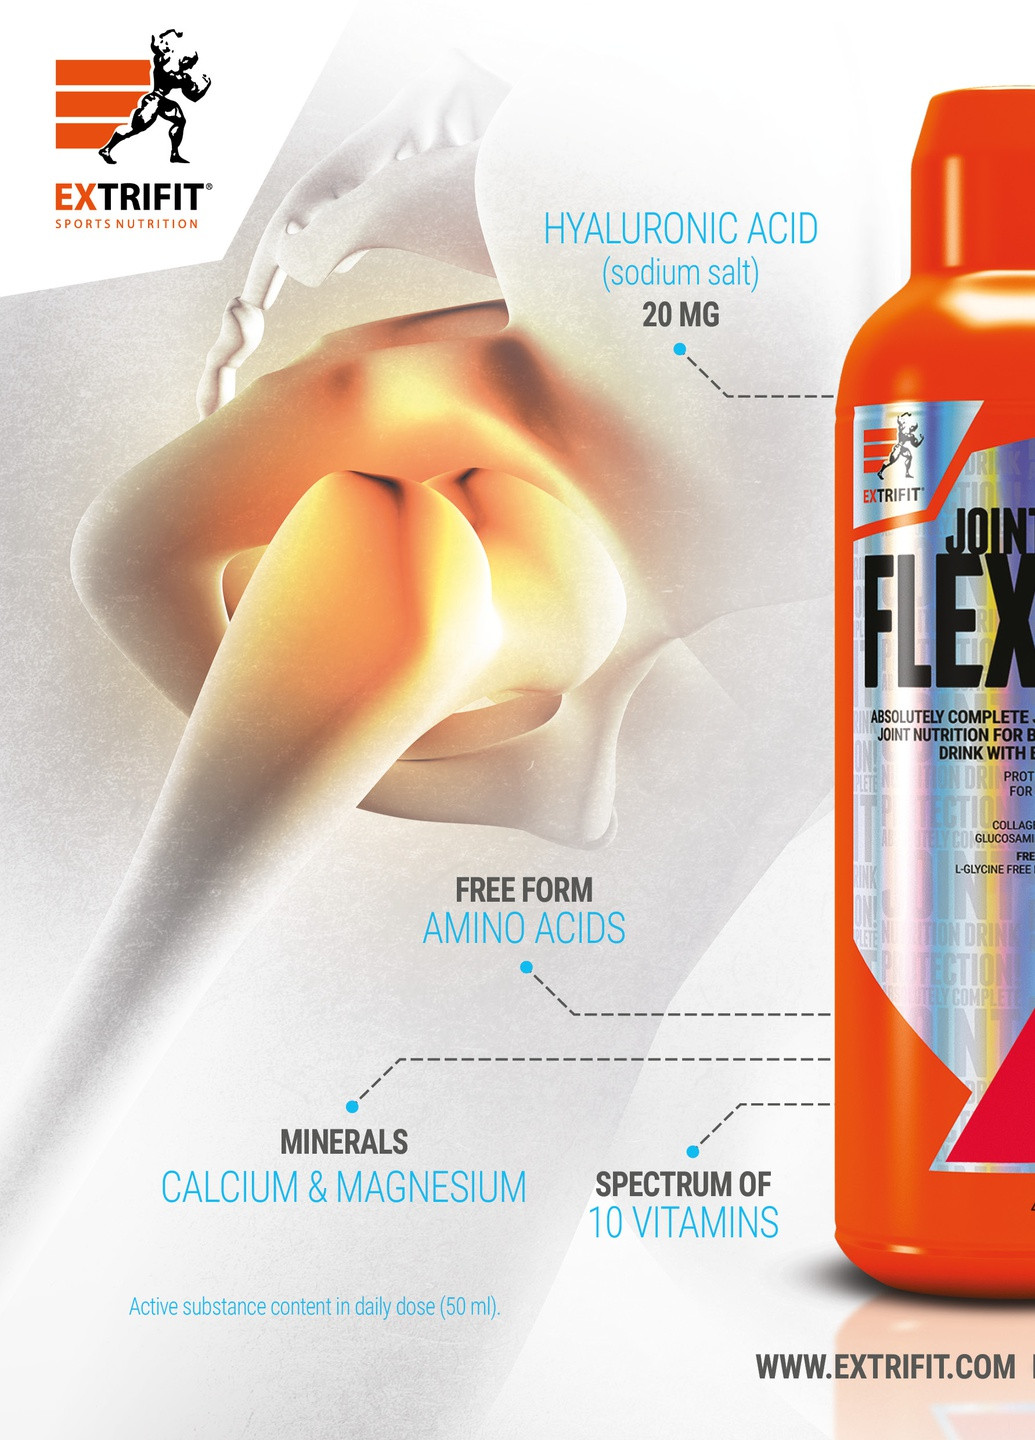 Для суглобів Flexain 1000 ml (Orange) Extrifit (258402872)